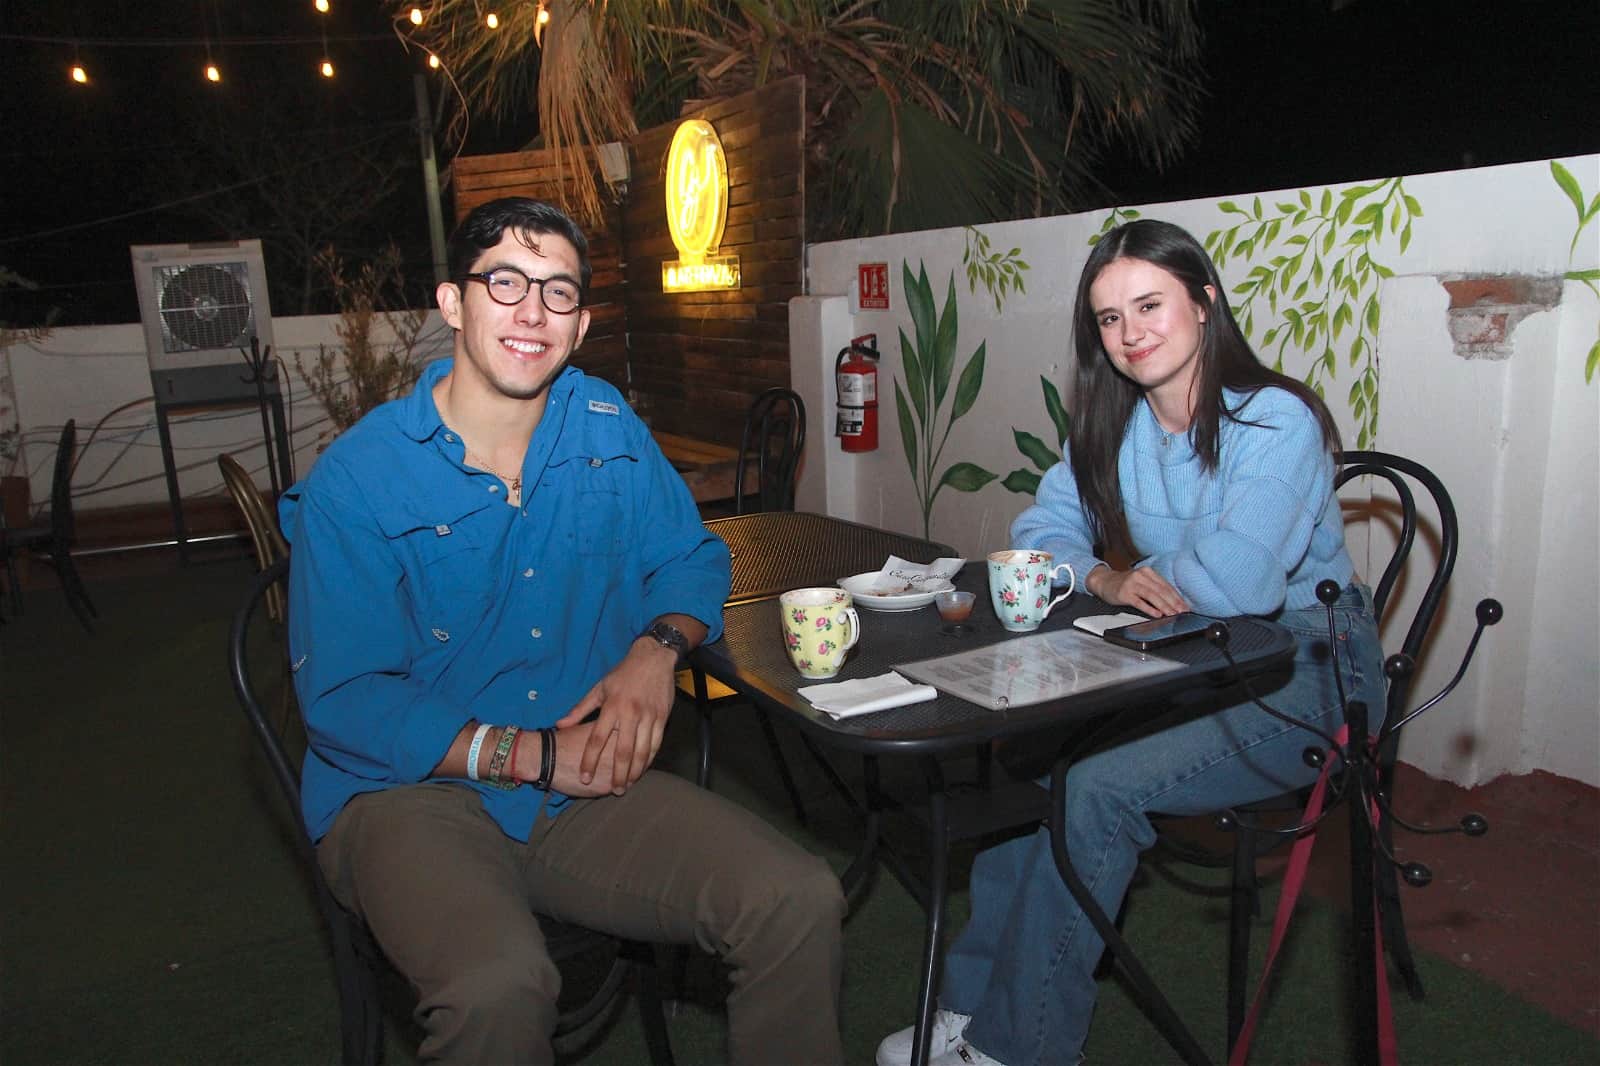 Buena charla entre amigos En Casa Garmendia, Café y Churrería